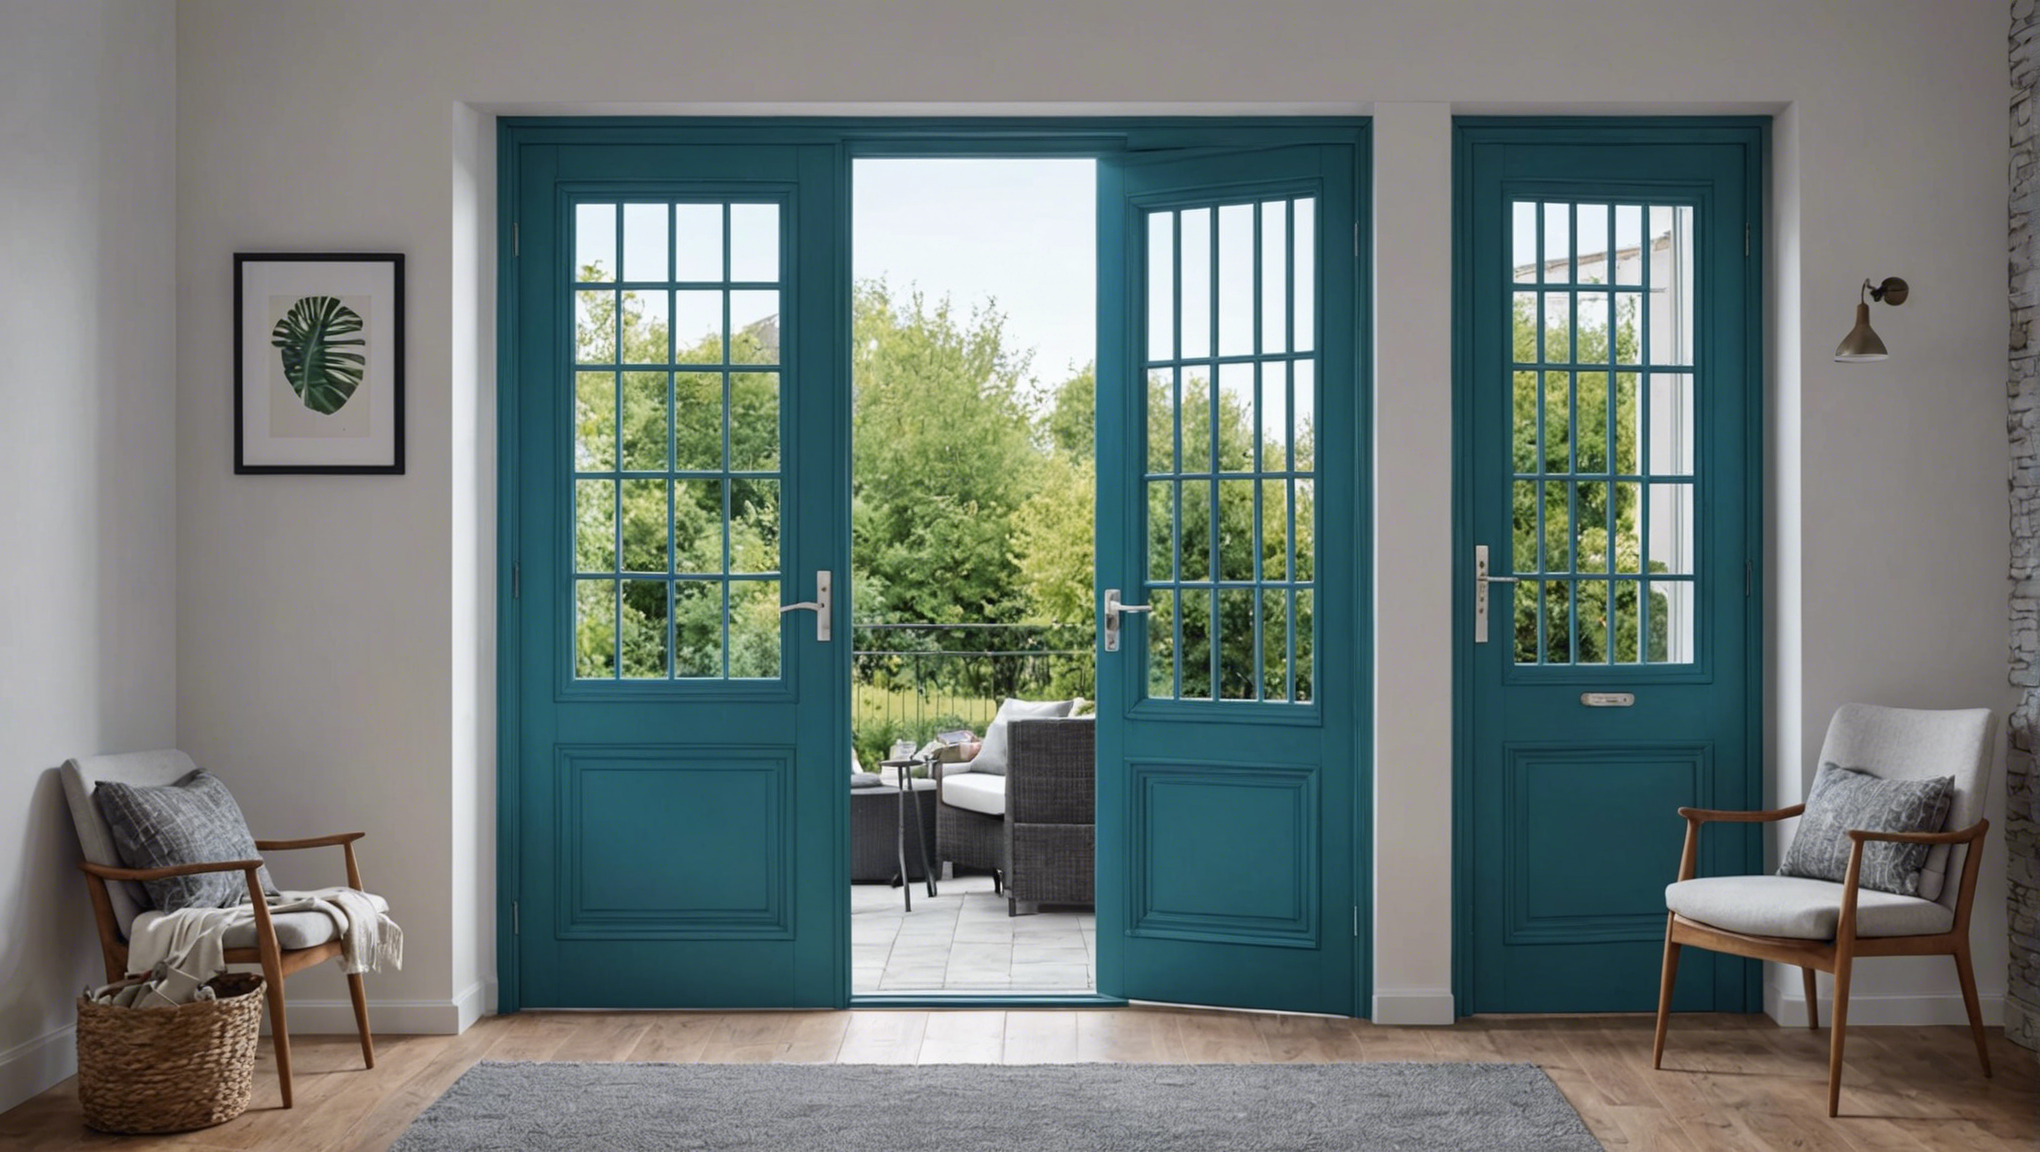 découvrez comment choisir les meilleures fenêtres et portes pour améliorer votre intérieur. conseils et astuces pour une sélection adaptée à vos besoins et à votre décoration.